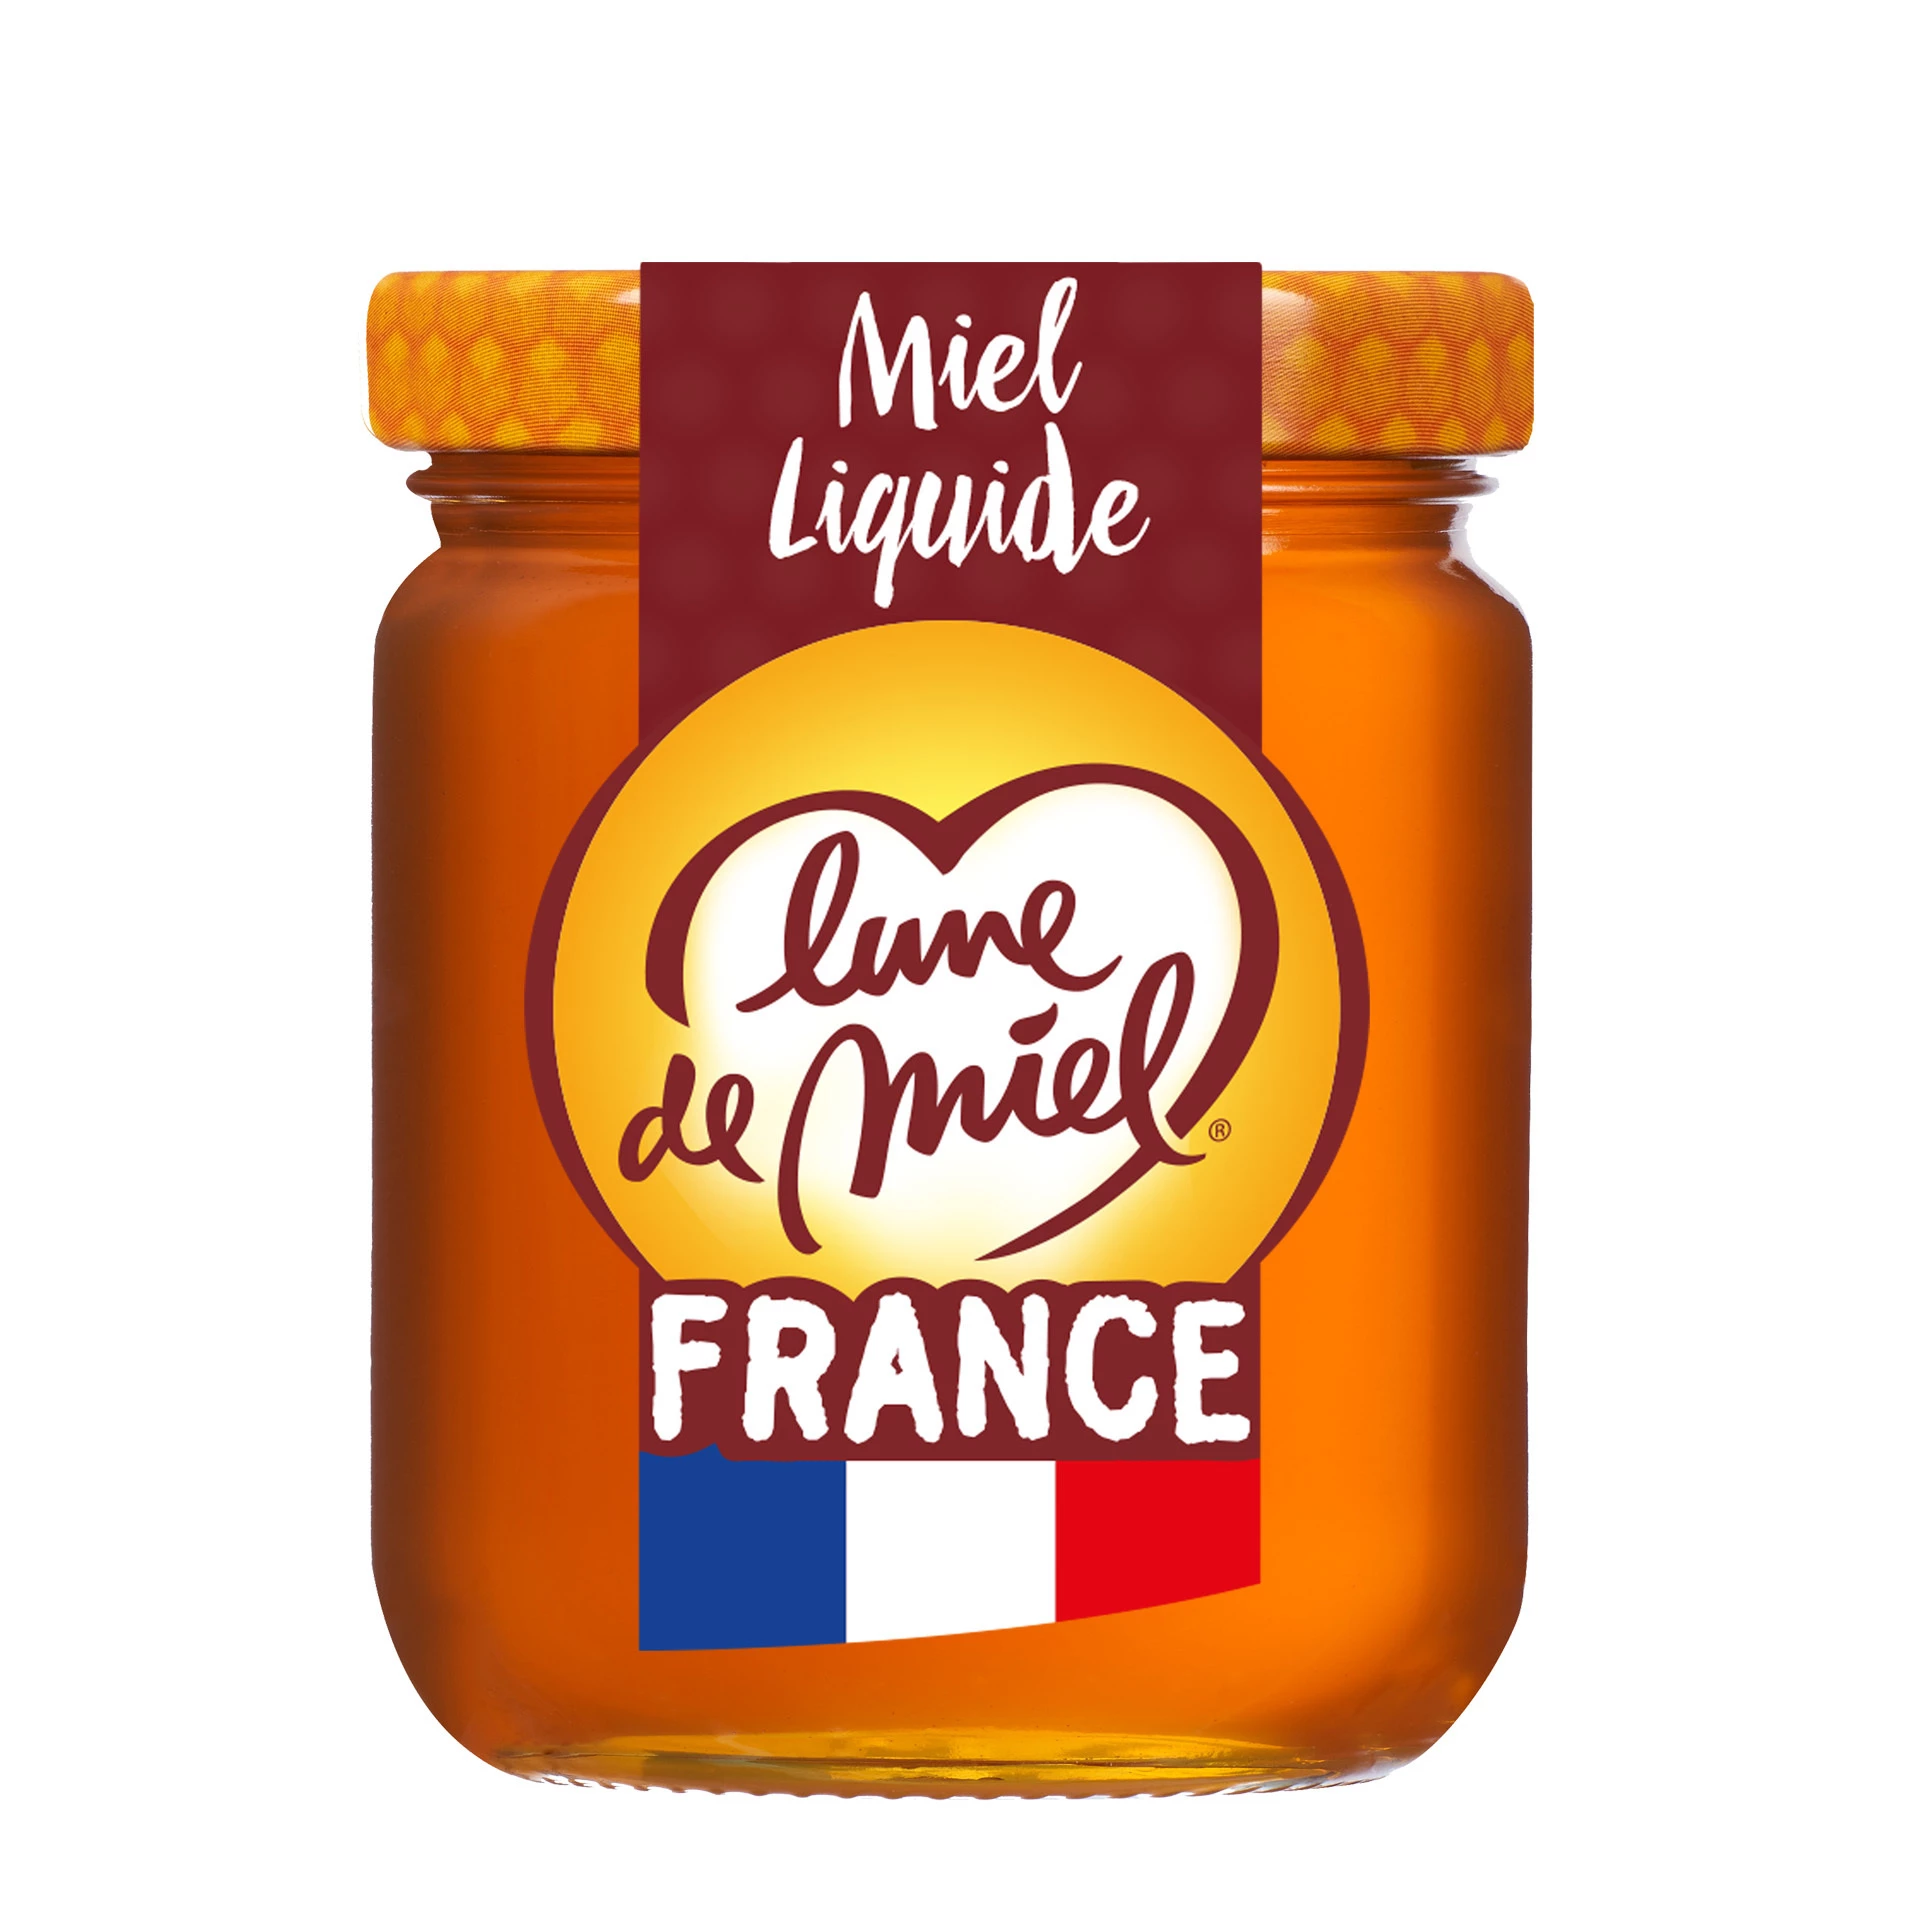 Miel France Liquide pot en verre, 250g - LUNE DE MIEL